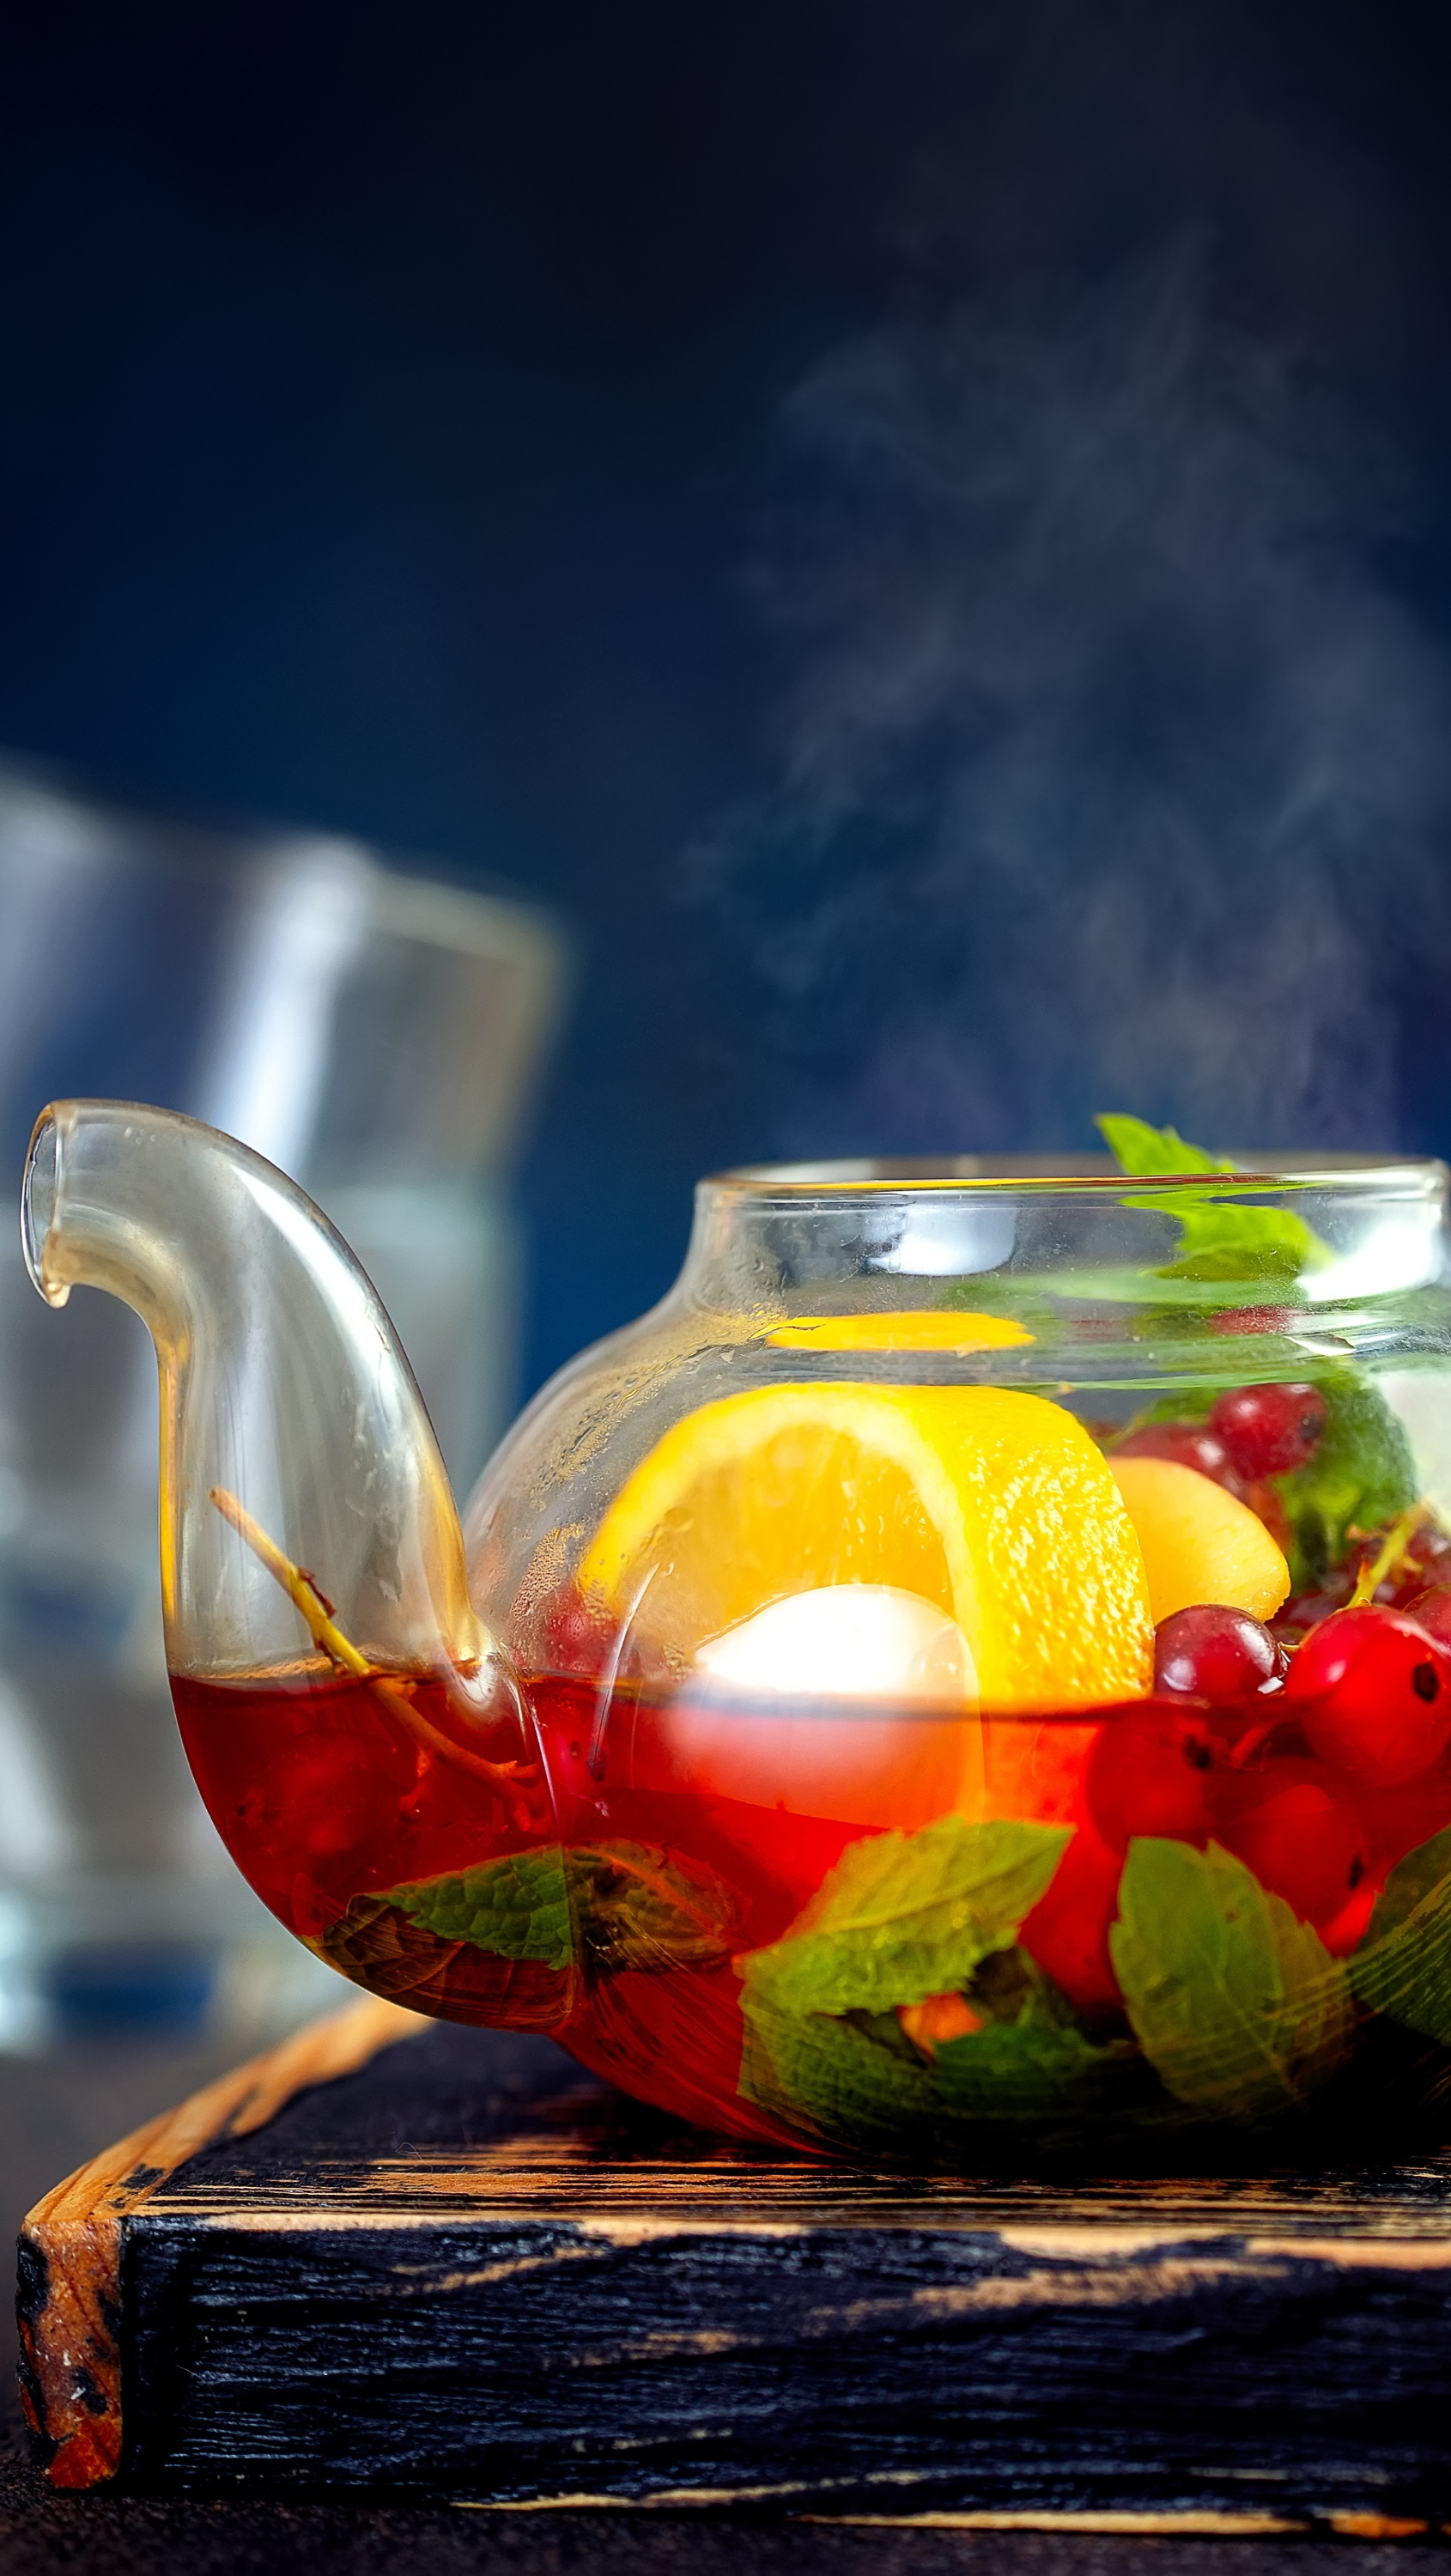 Фруктовый чайник. Фруктовый чай. Чай в чайнике с фруктами. Фруктово-ягодный чай. Фруетоавц чай в чайнике.